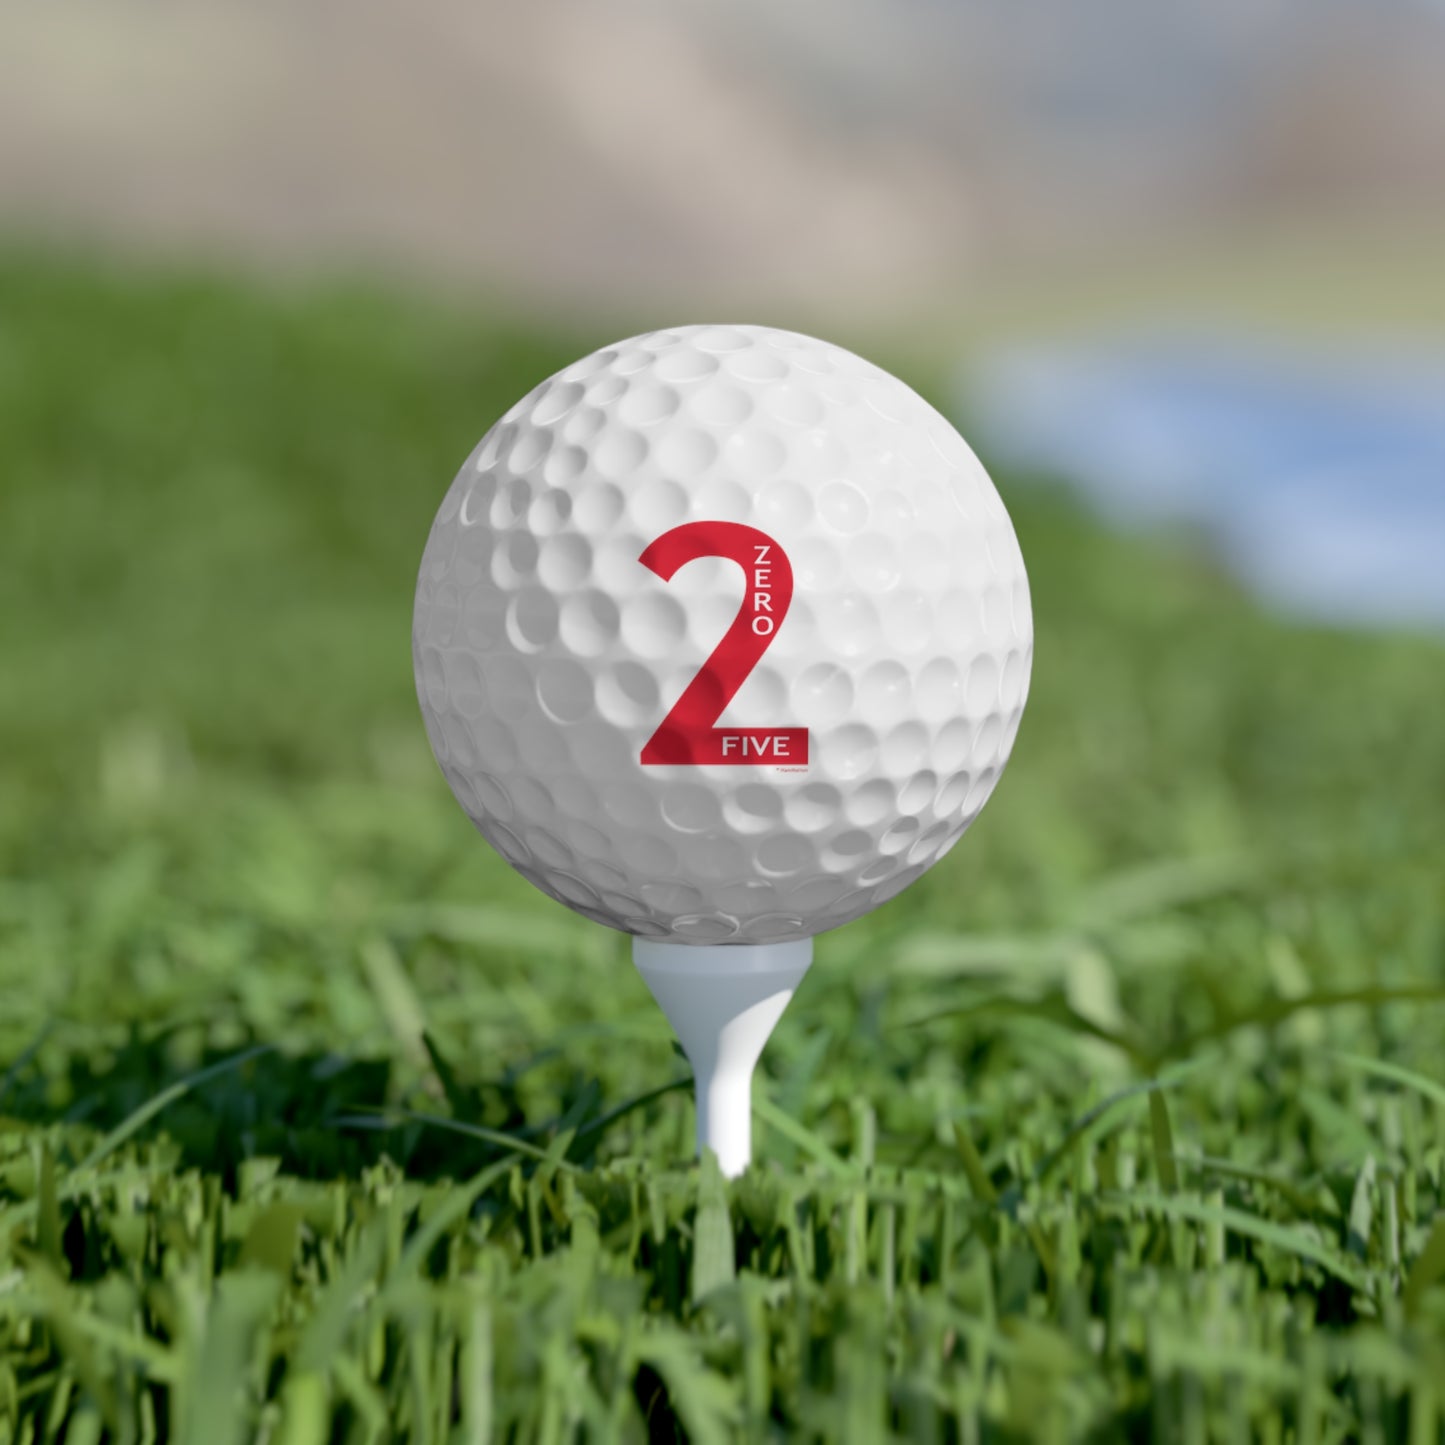 2-0-5 Golf Balls, 6pcs